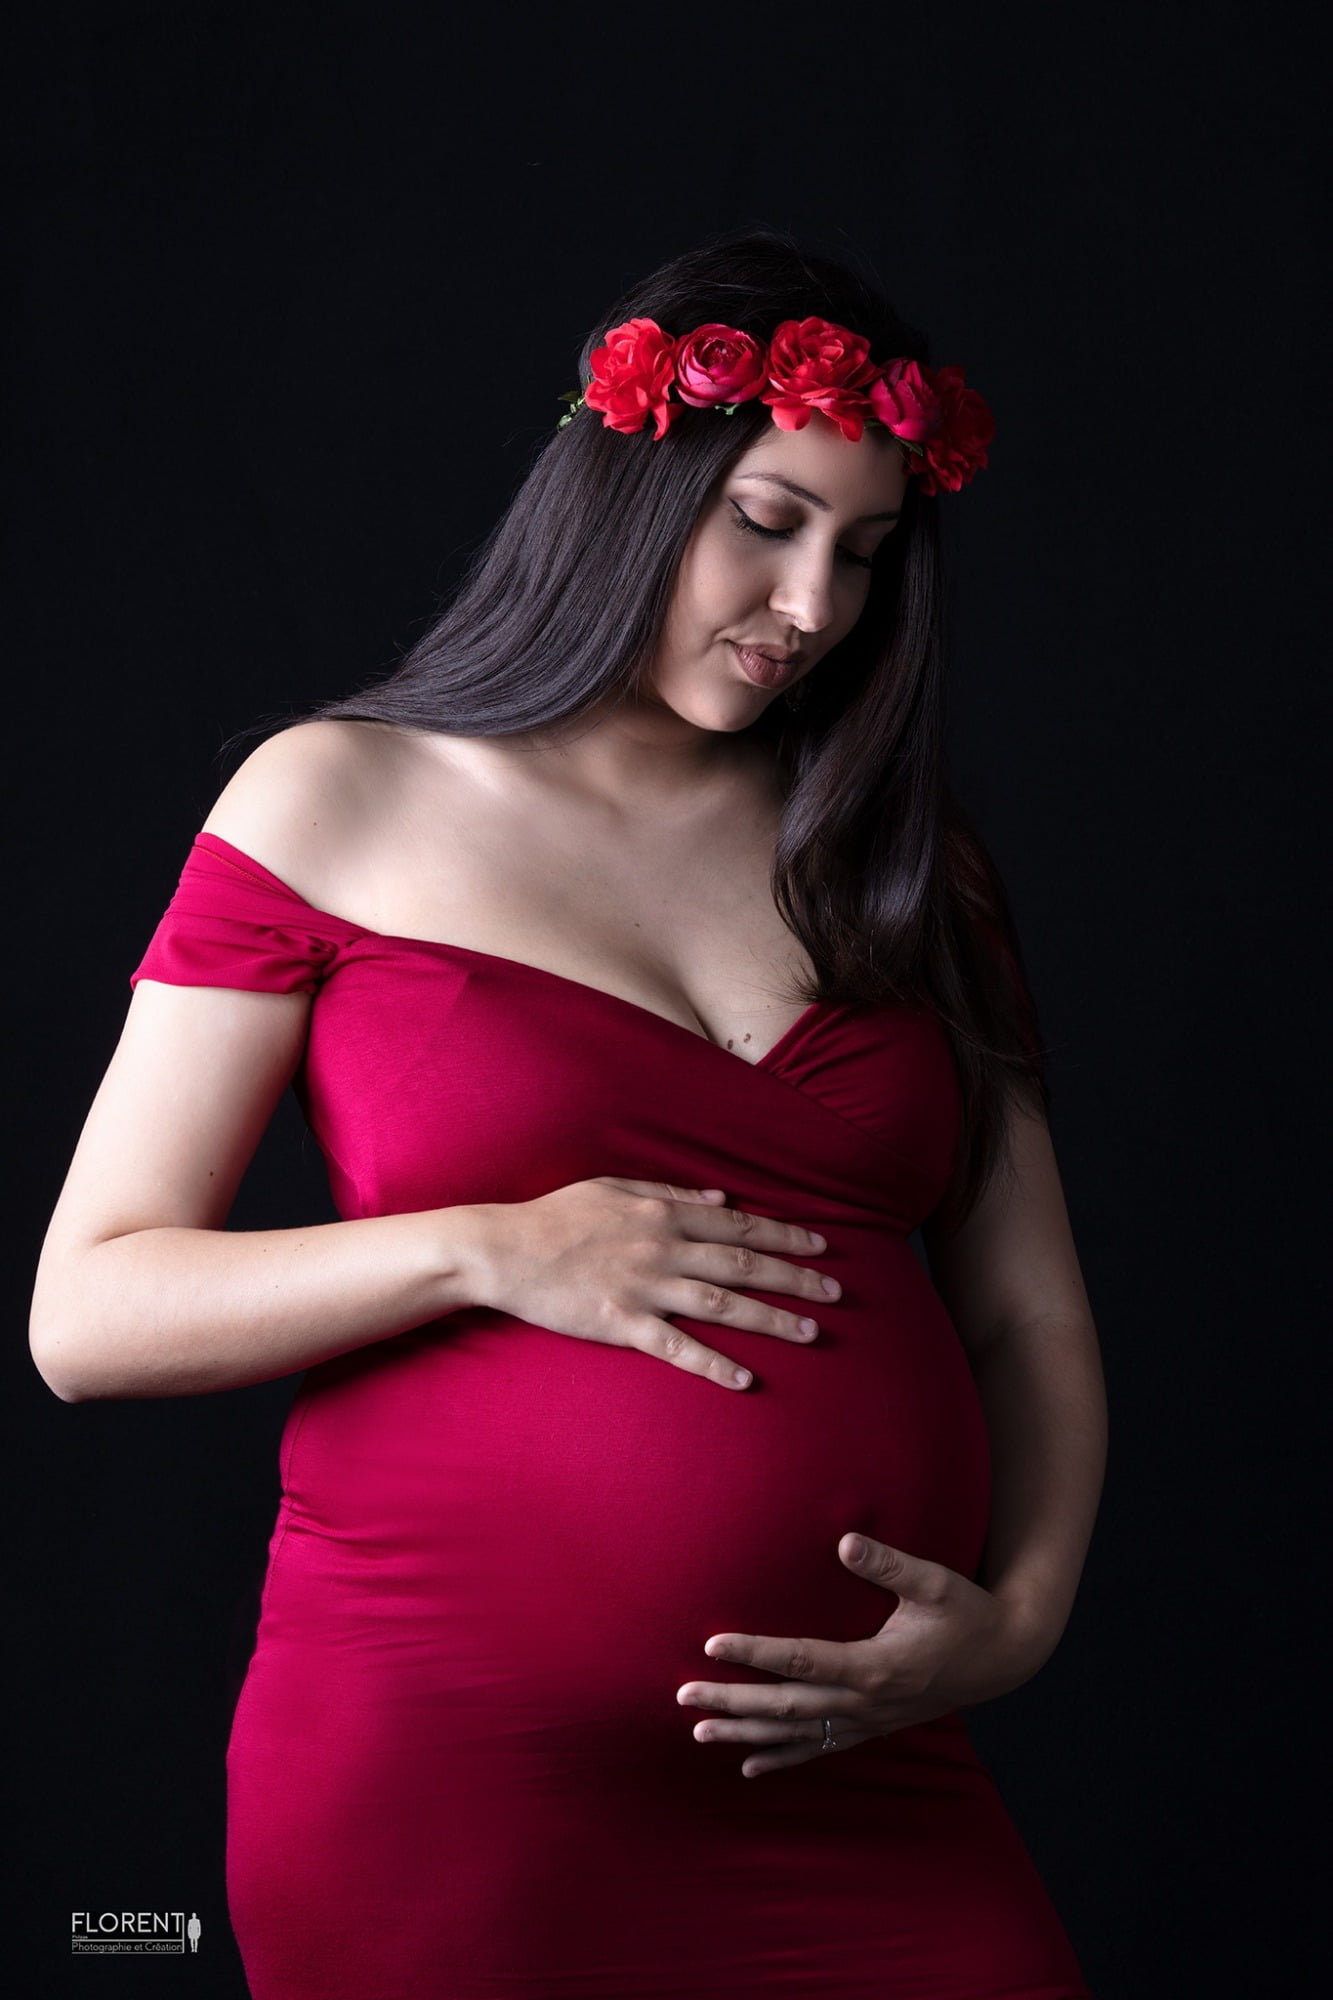 portrait maternité délicate ben robe rouge posant ses mains sur son ventre